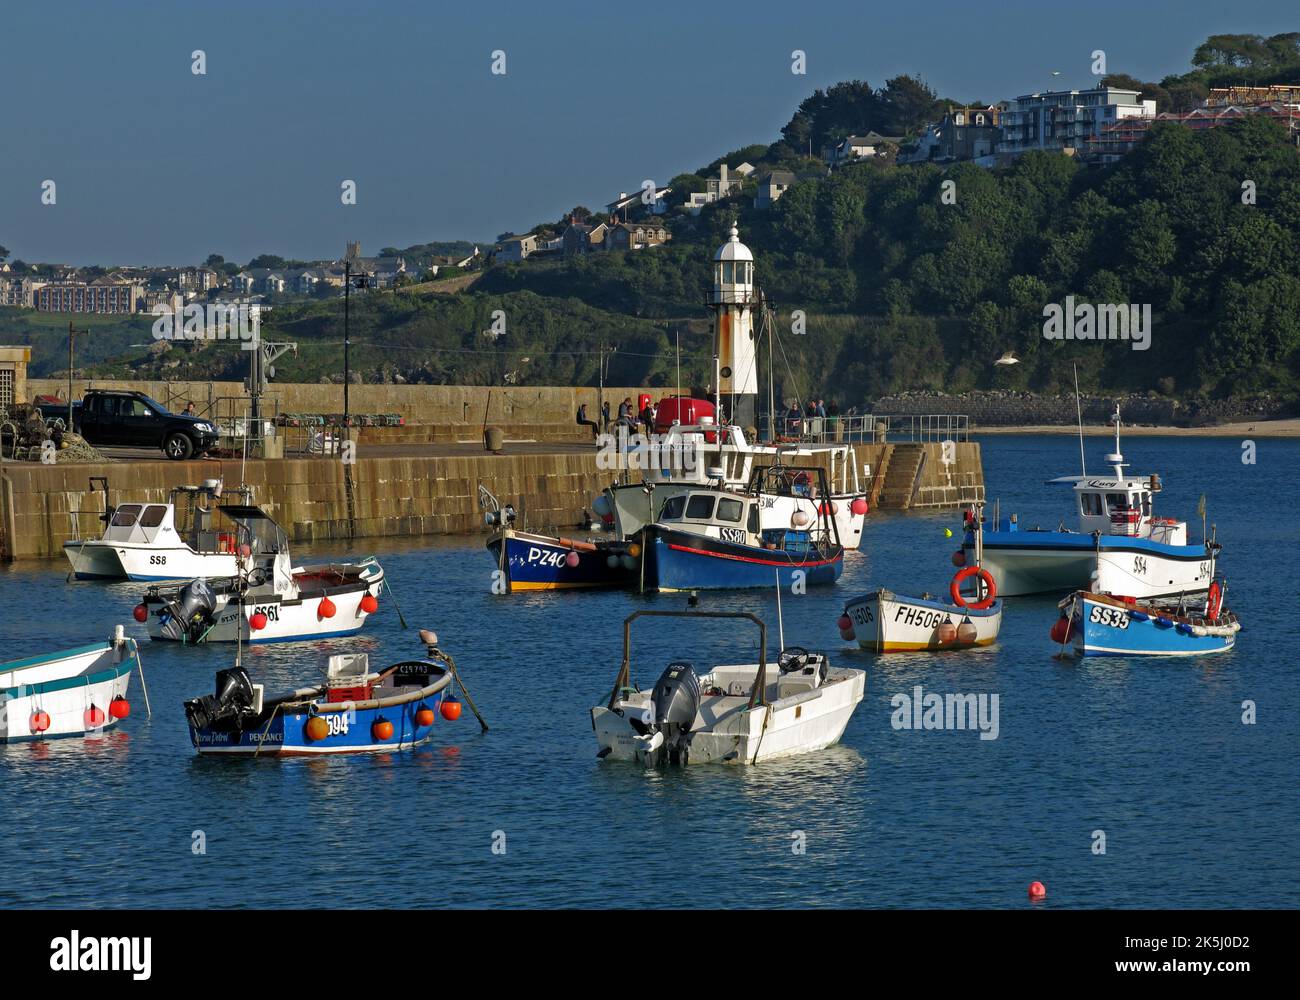 Le port de St Ives, Cornouailles, Angleterre, Royaume-Uni, bateaux amarrés et phare Banque D'Images